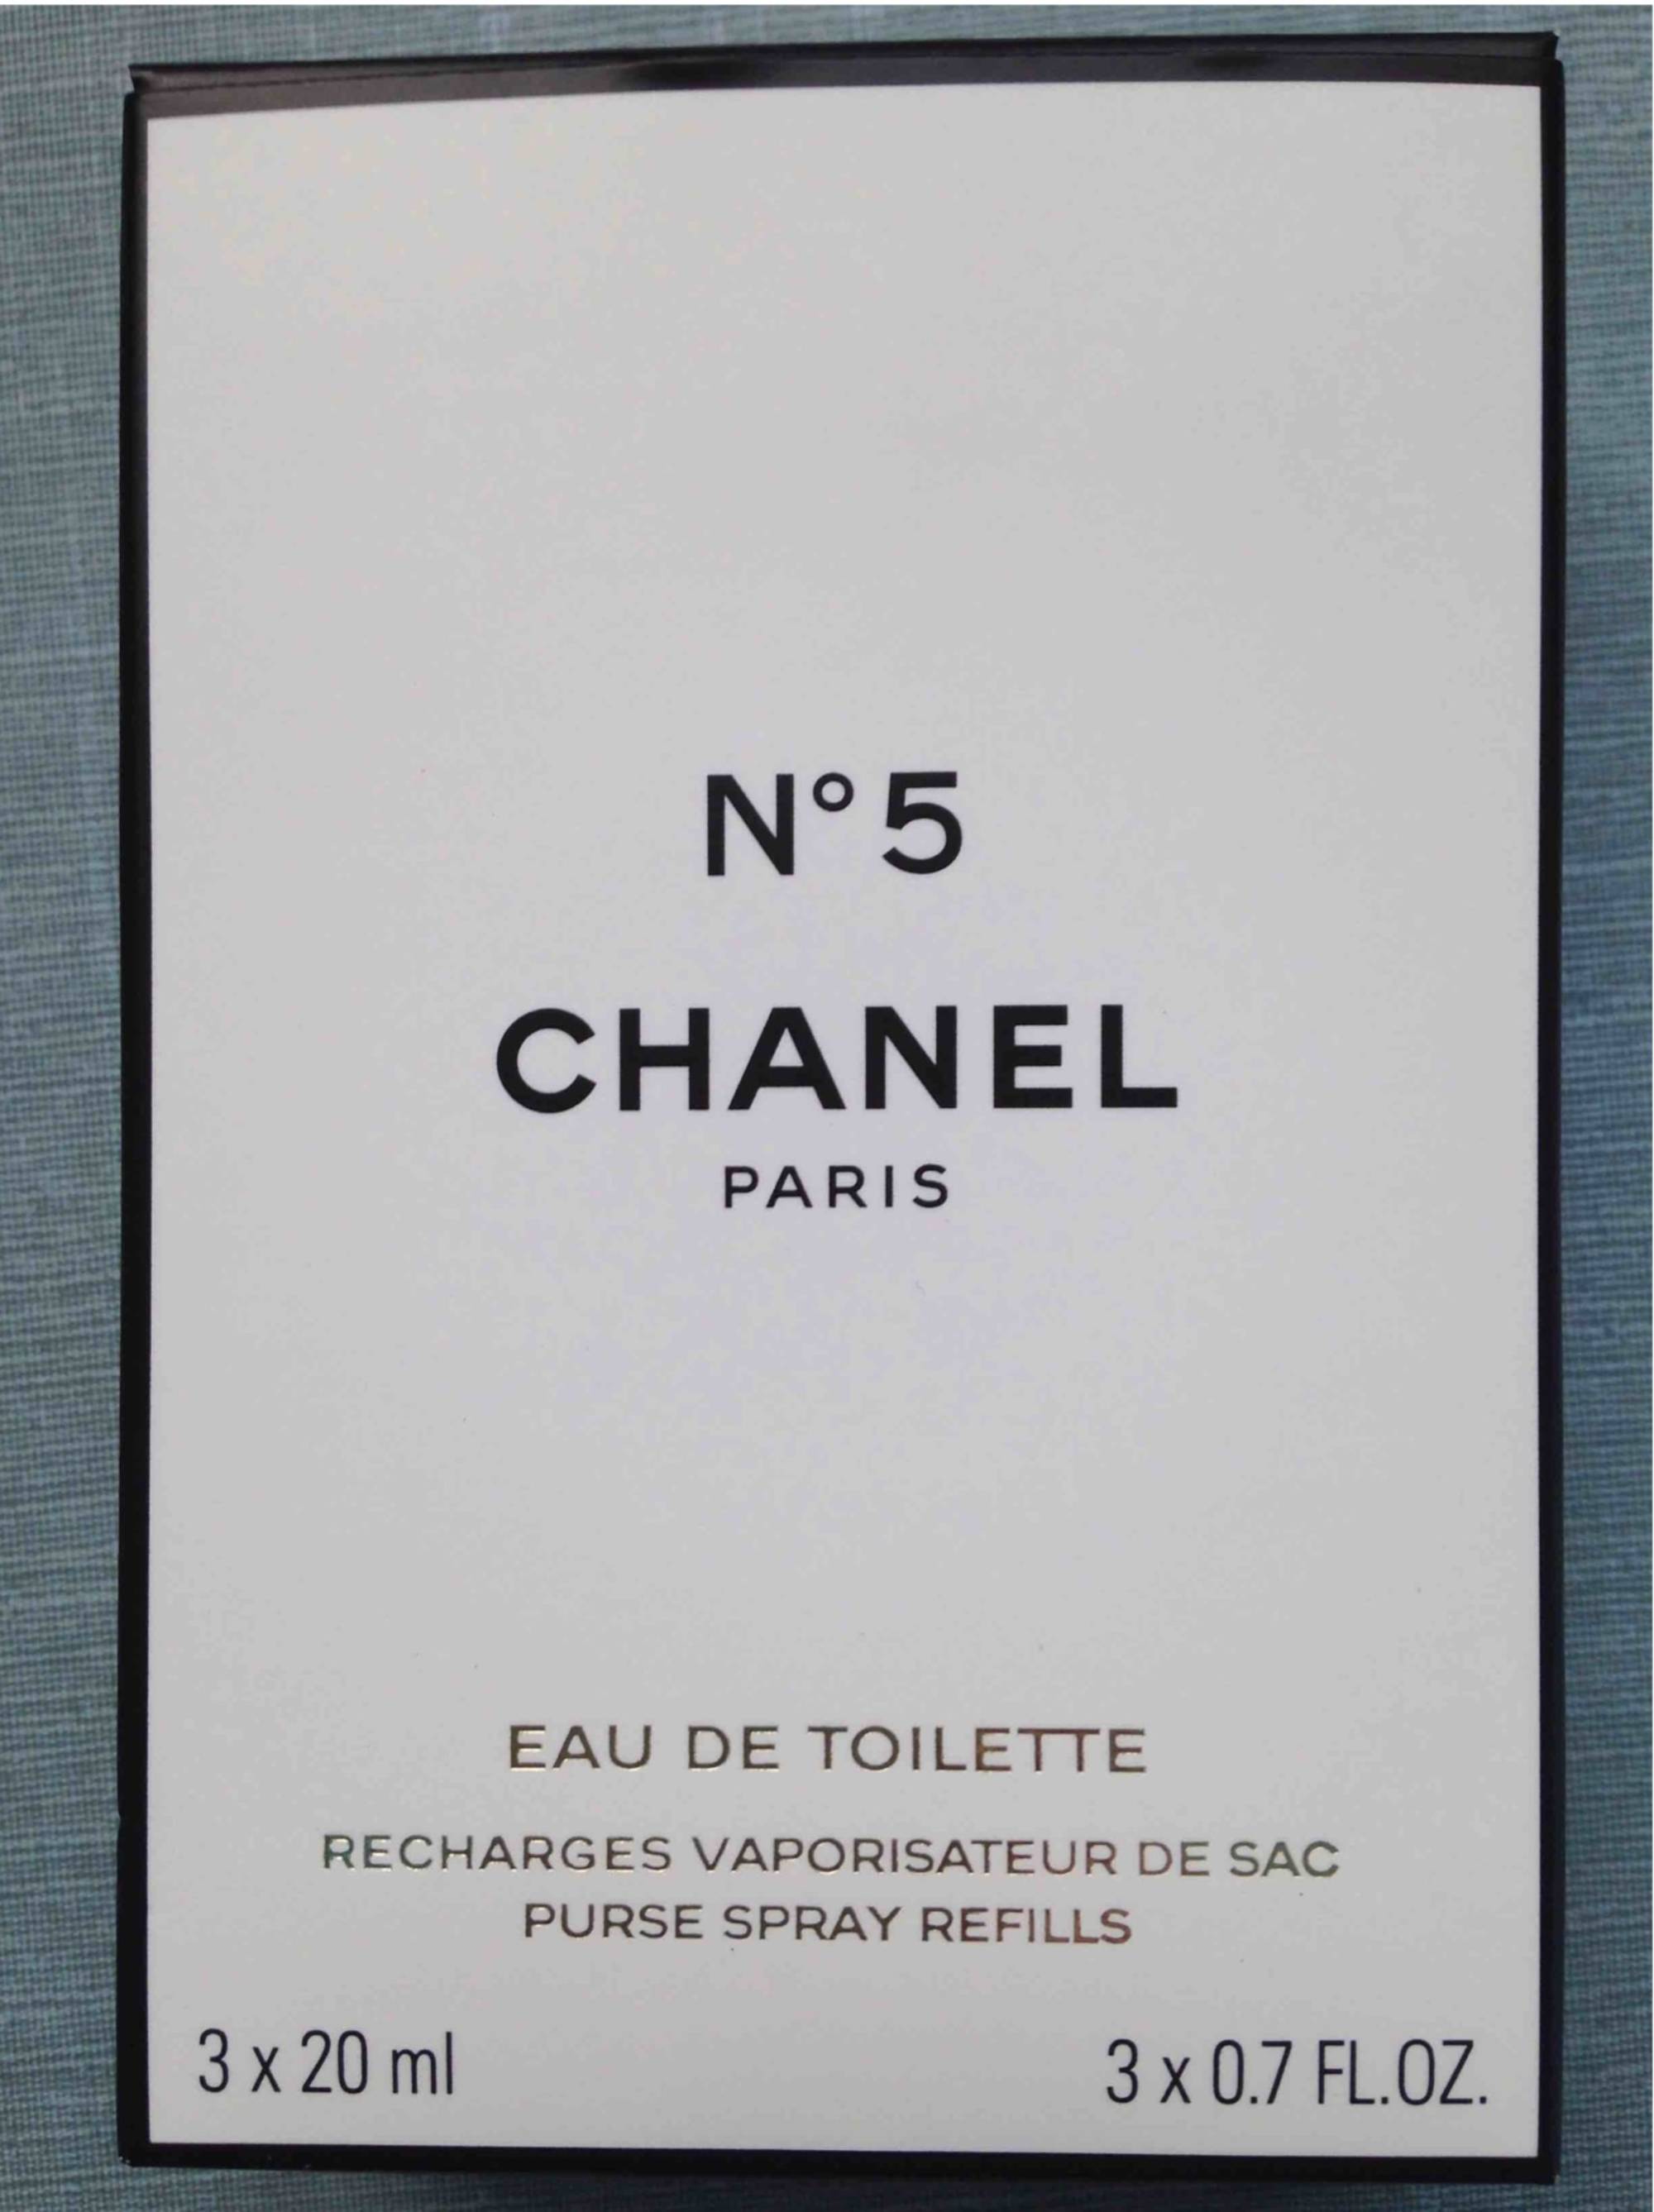 CHANEL - N° 5 Eau de toilette - Recharges vaporisateur de sac